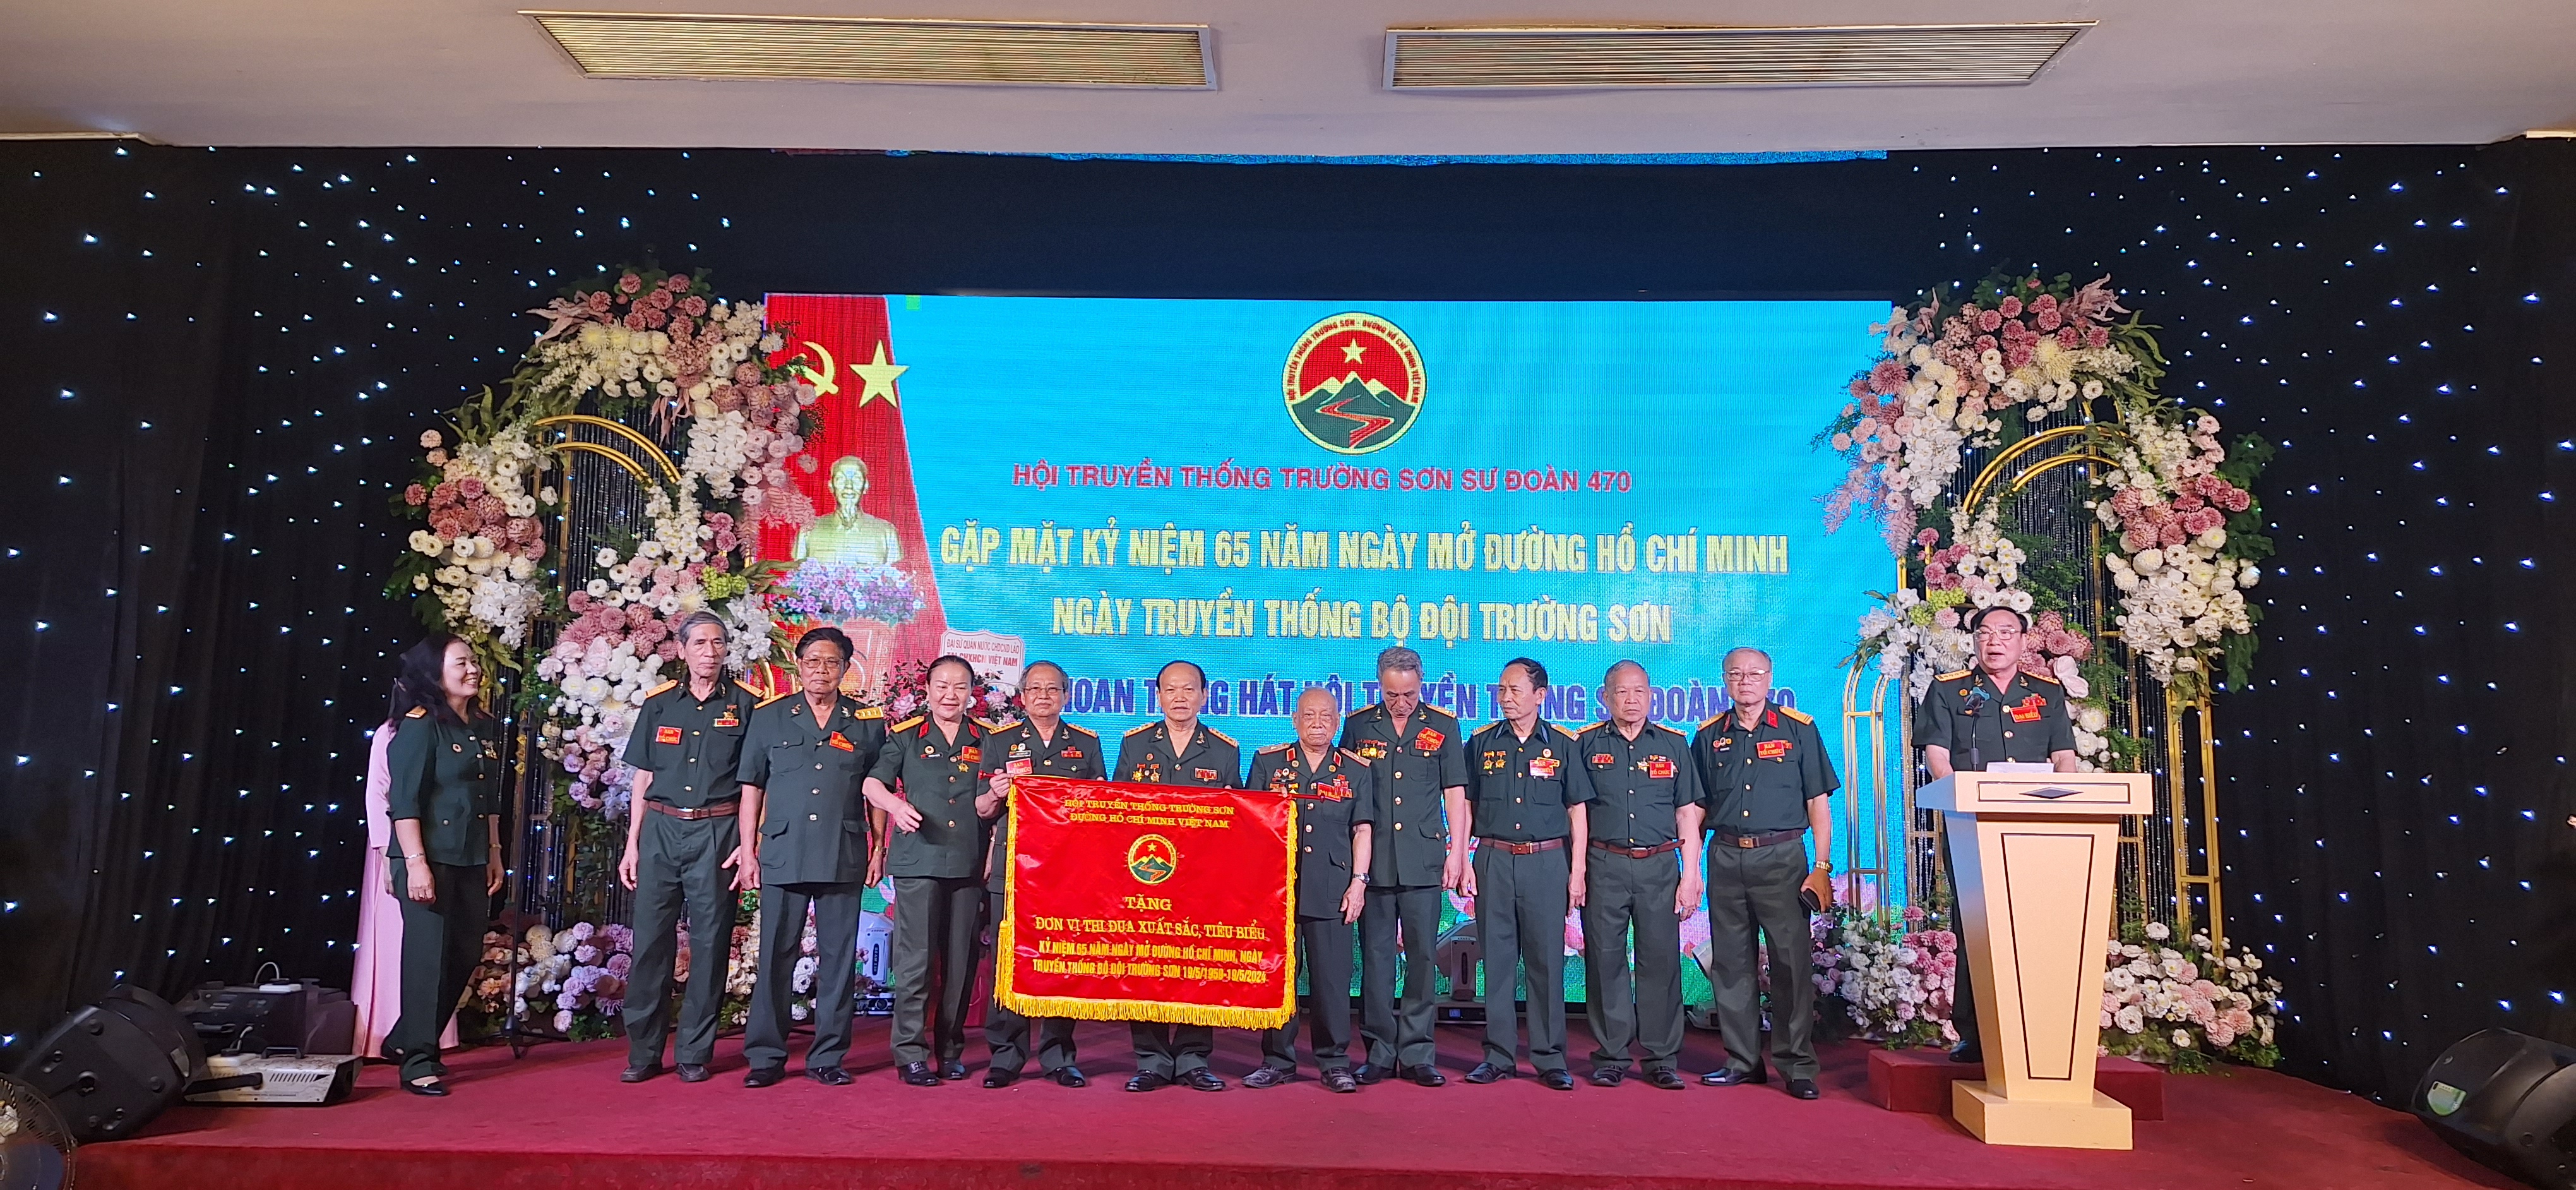 Hội Trường sơn sư đoàn 470 kỉ niệm 65 năm ngày truyền thống bộ đội Trường Sơn và liên hoan tiếng hát CSTS sư đoàn lần thứ nhất